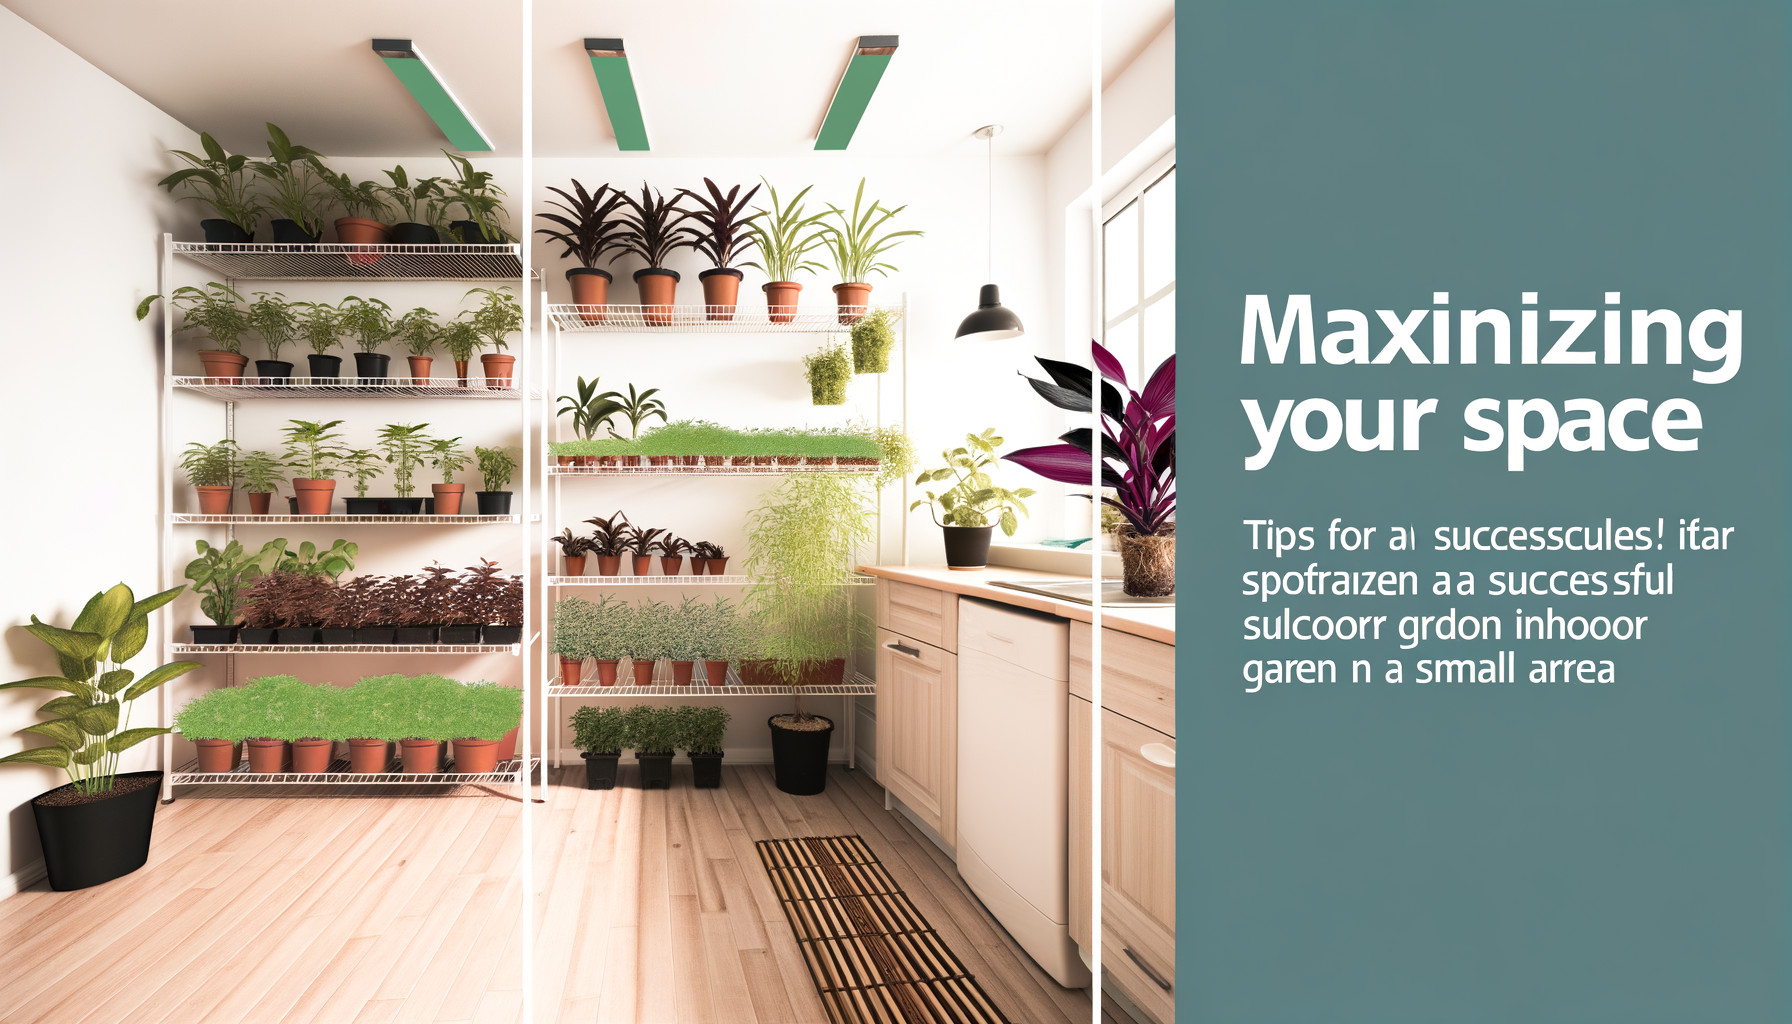 "Inspiration pour maximiser l'espace en aménageant un jardin d'intérieur réussi dans un petit espace."